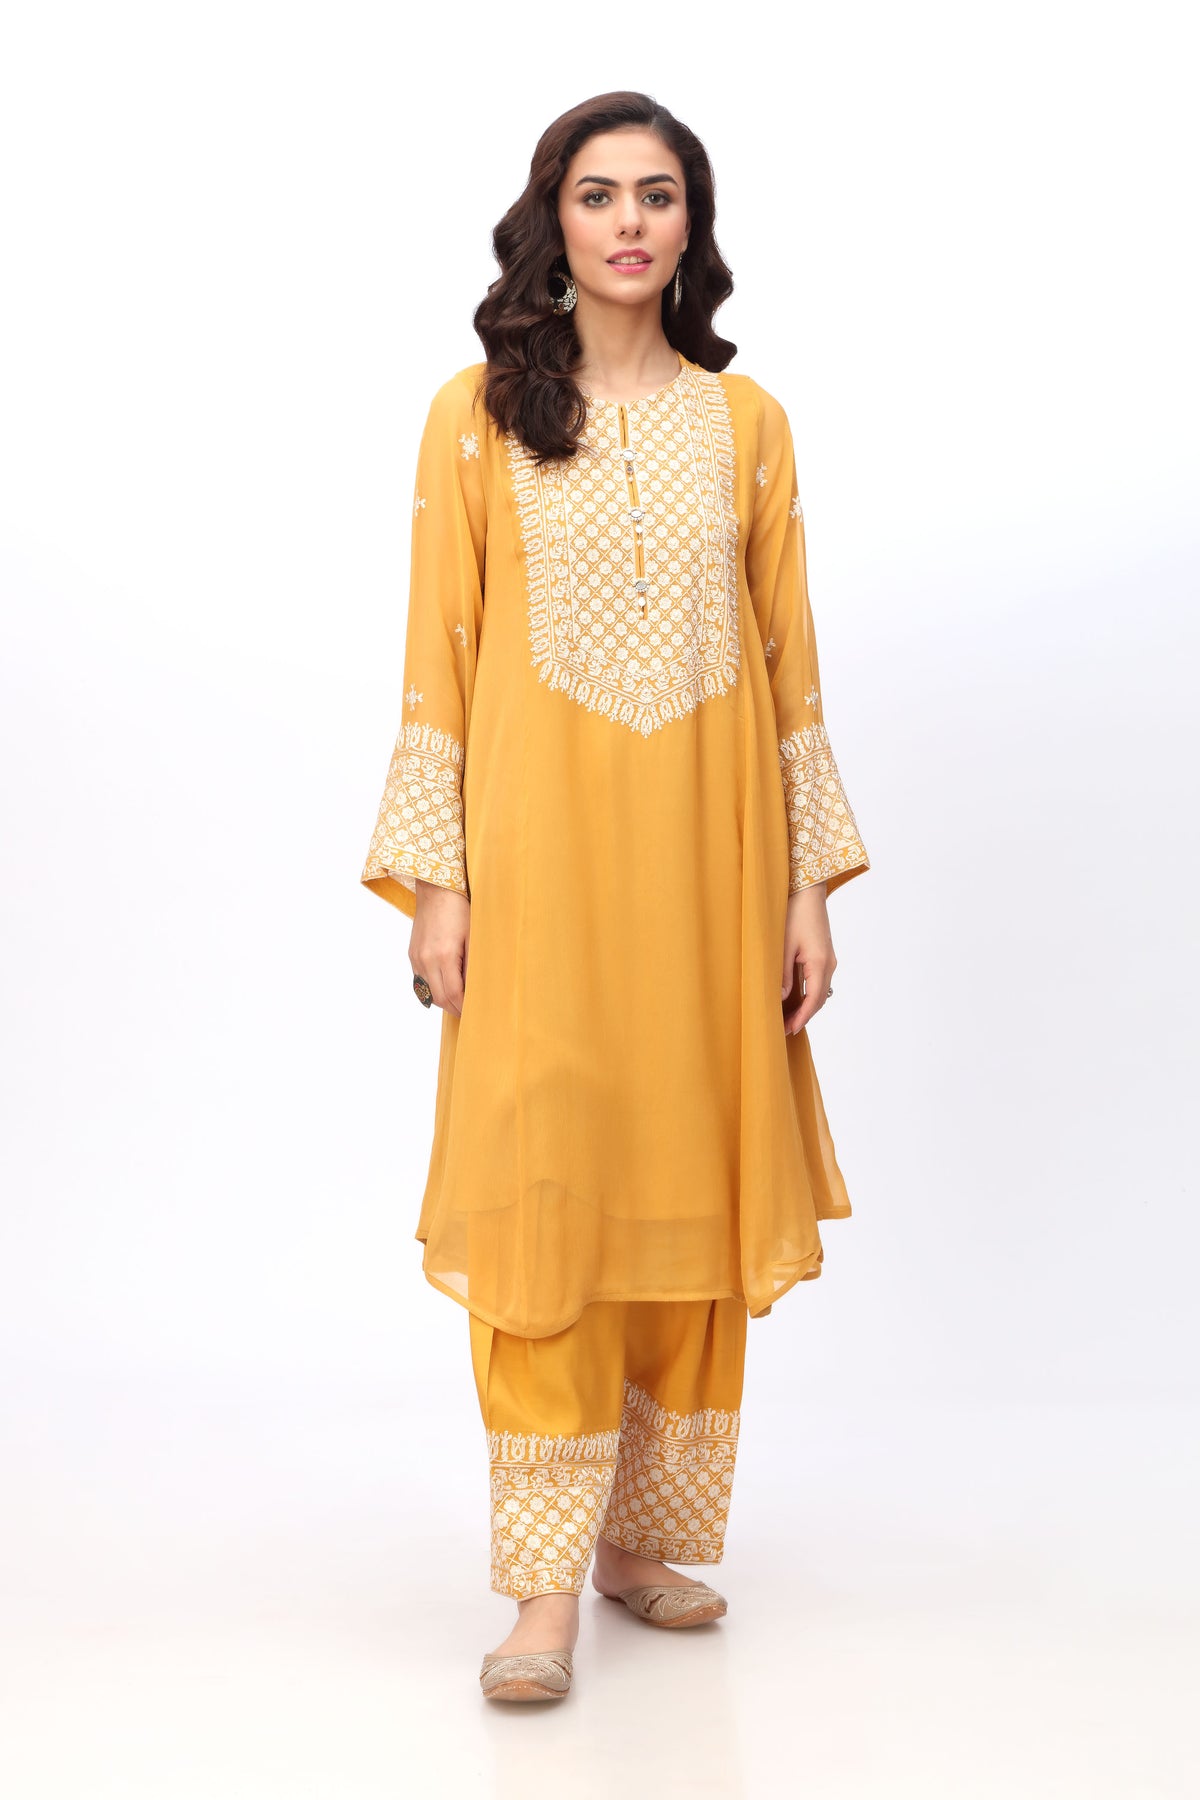 White Square in Mustard coloured Pak Chiffon fabric